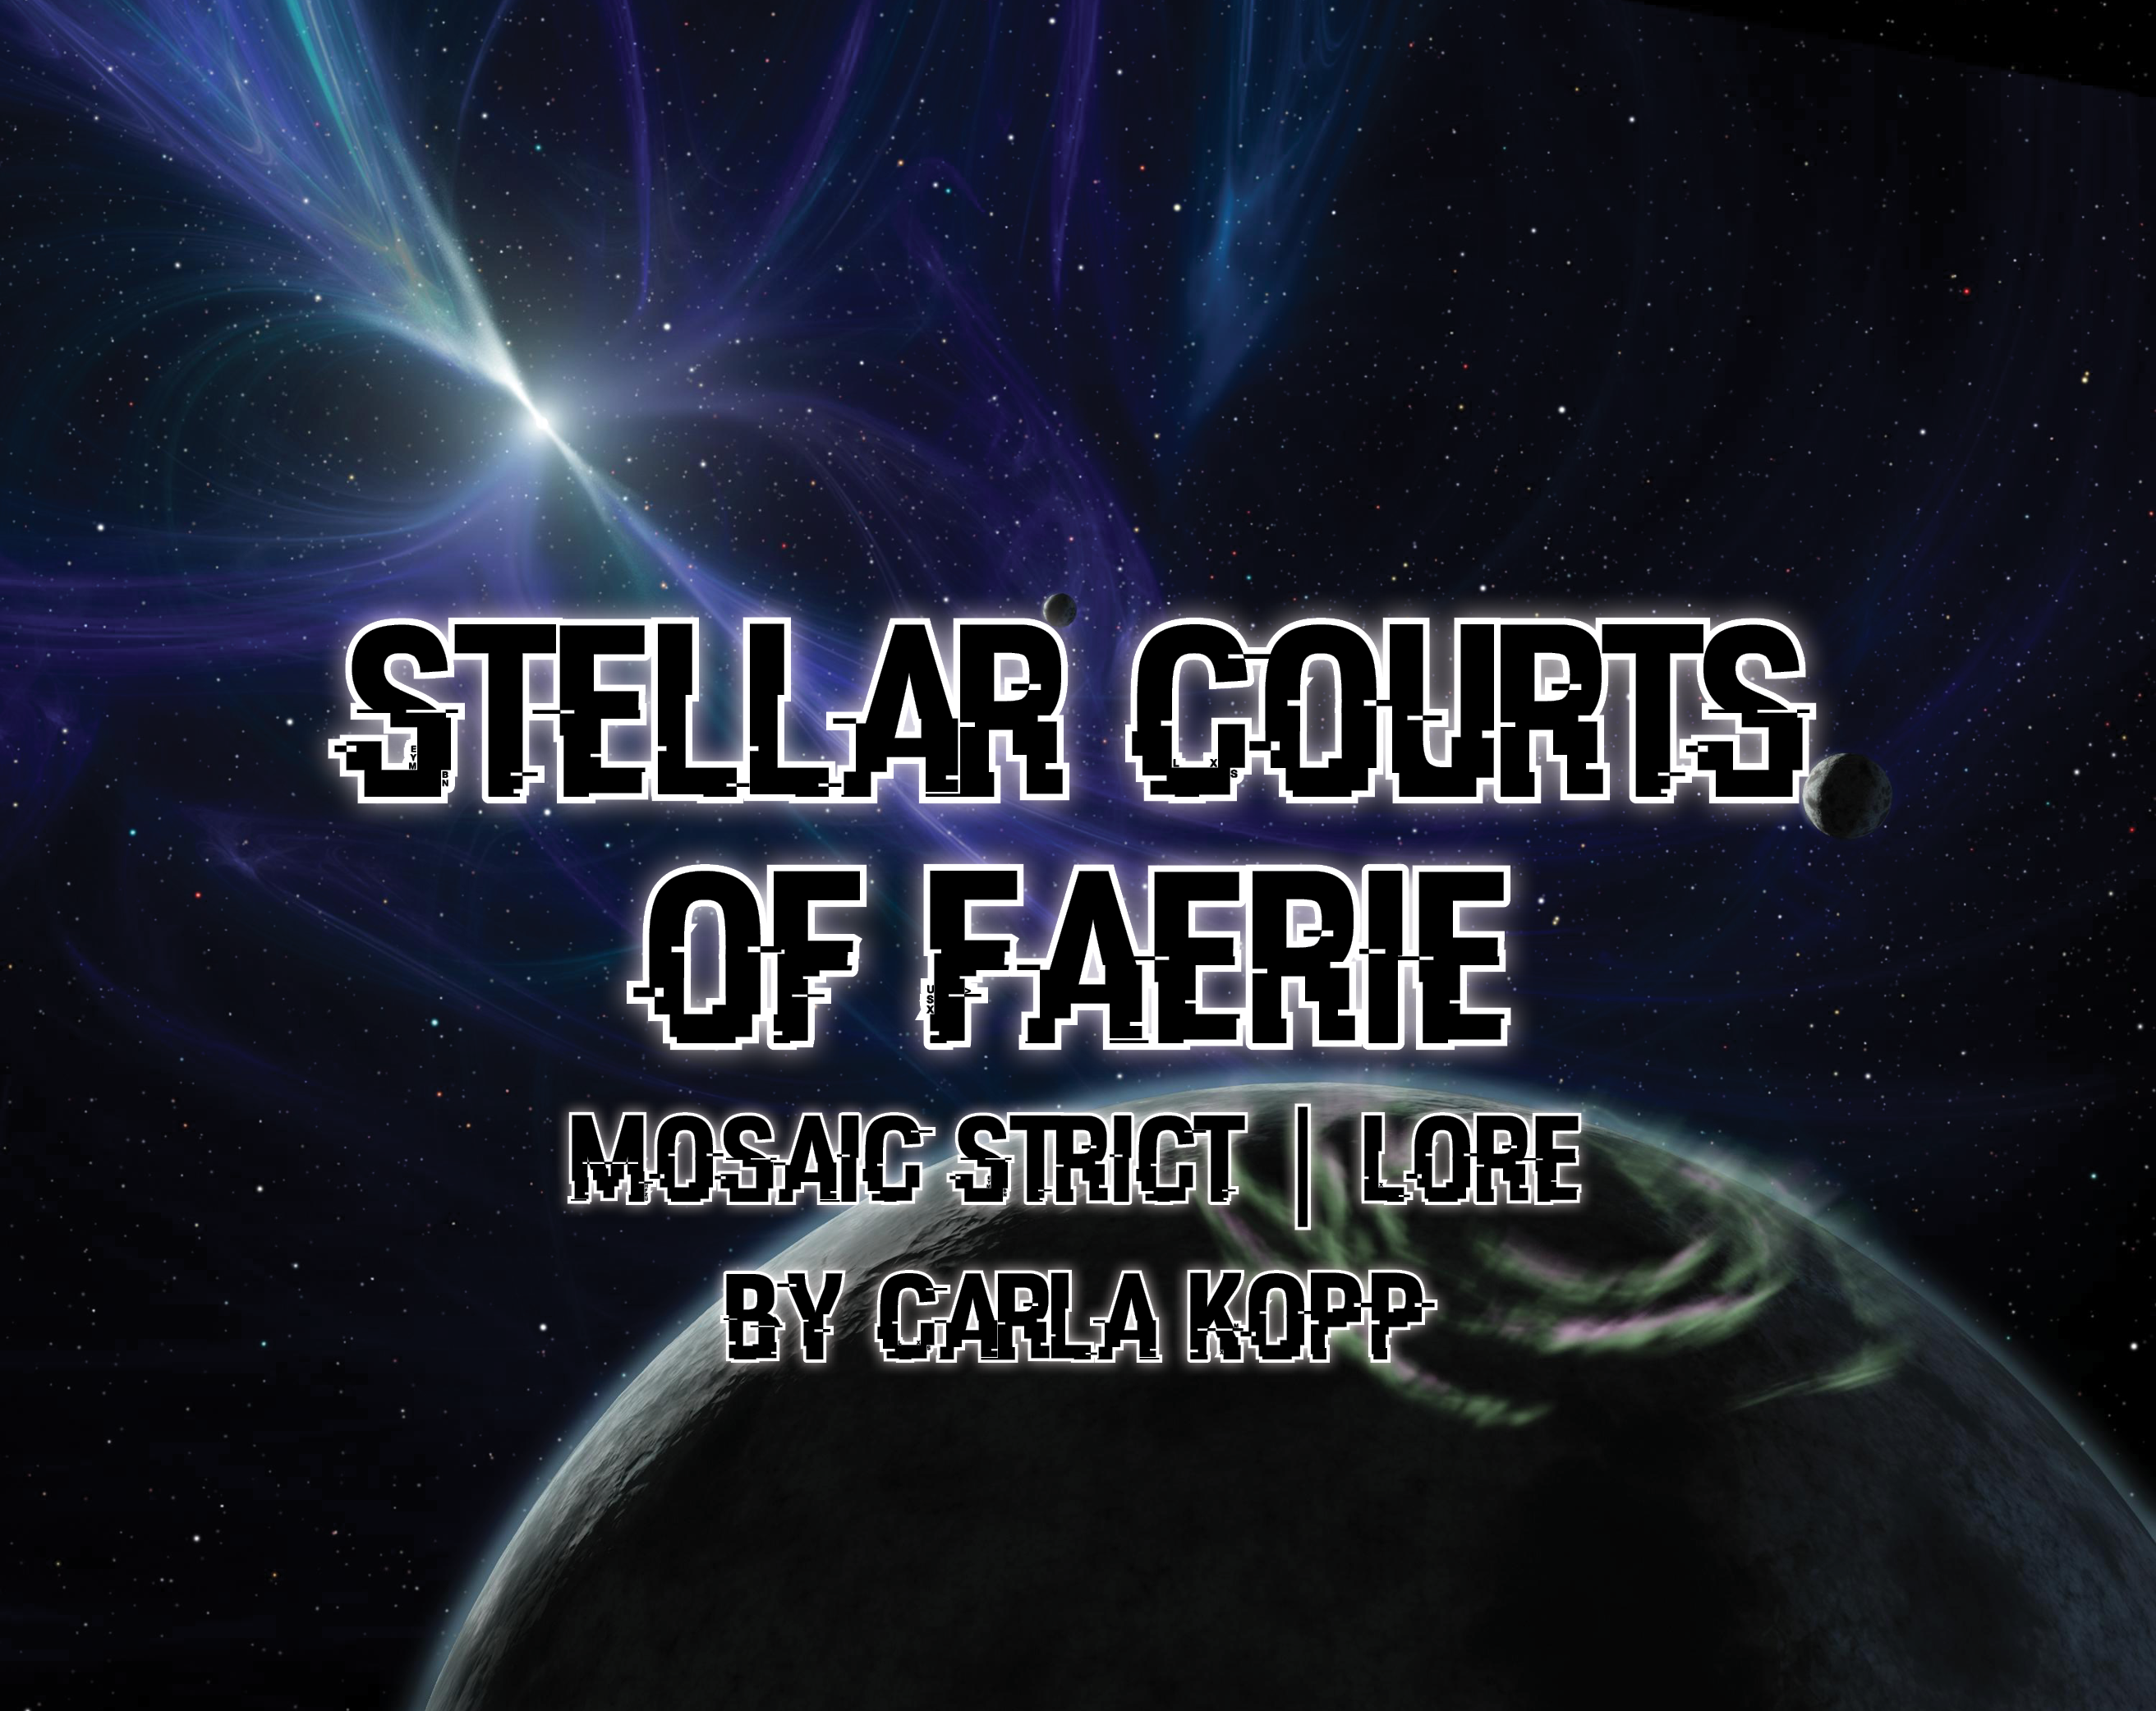 Stellar Courts of Faerie